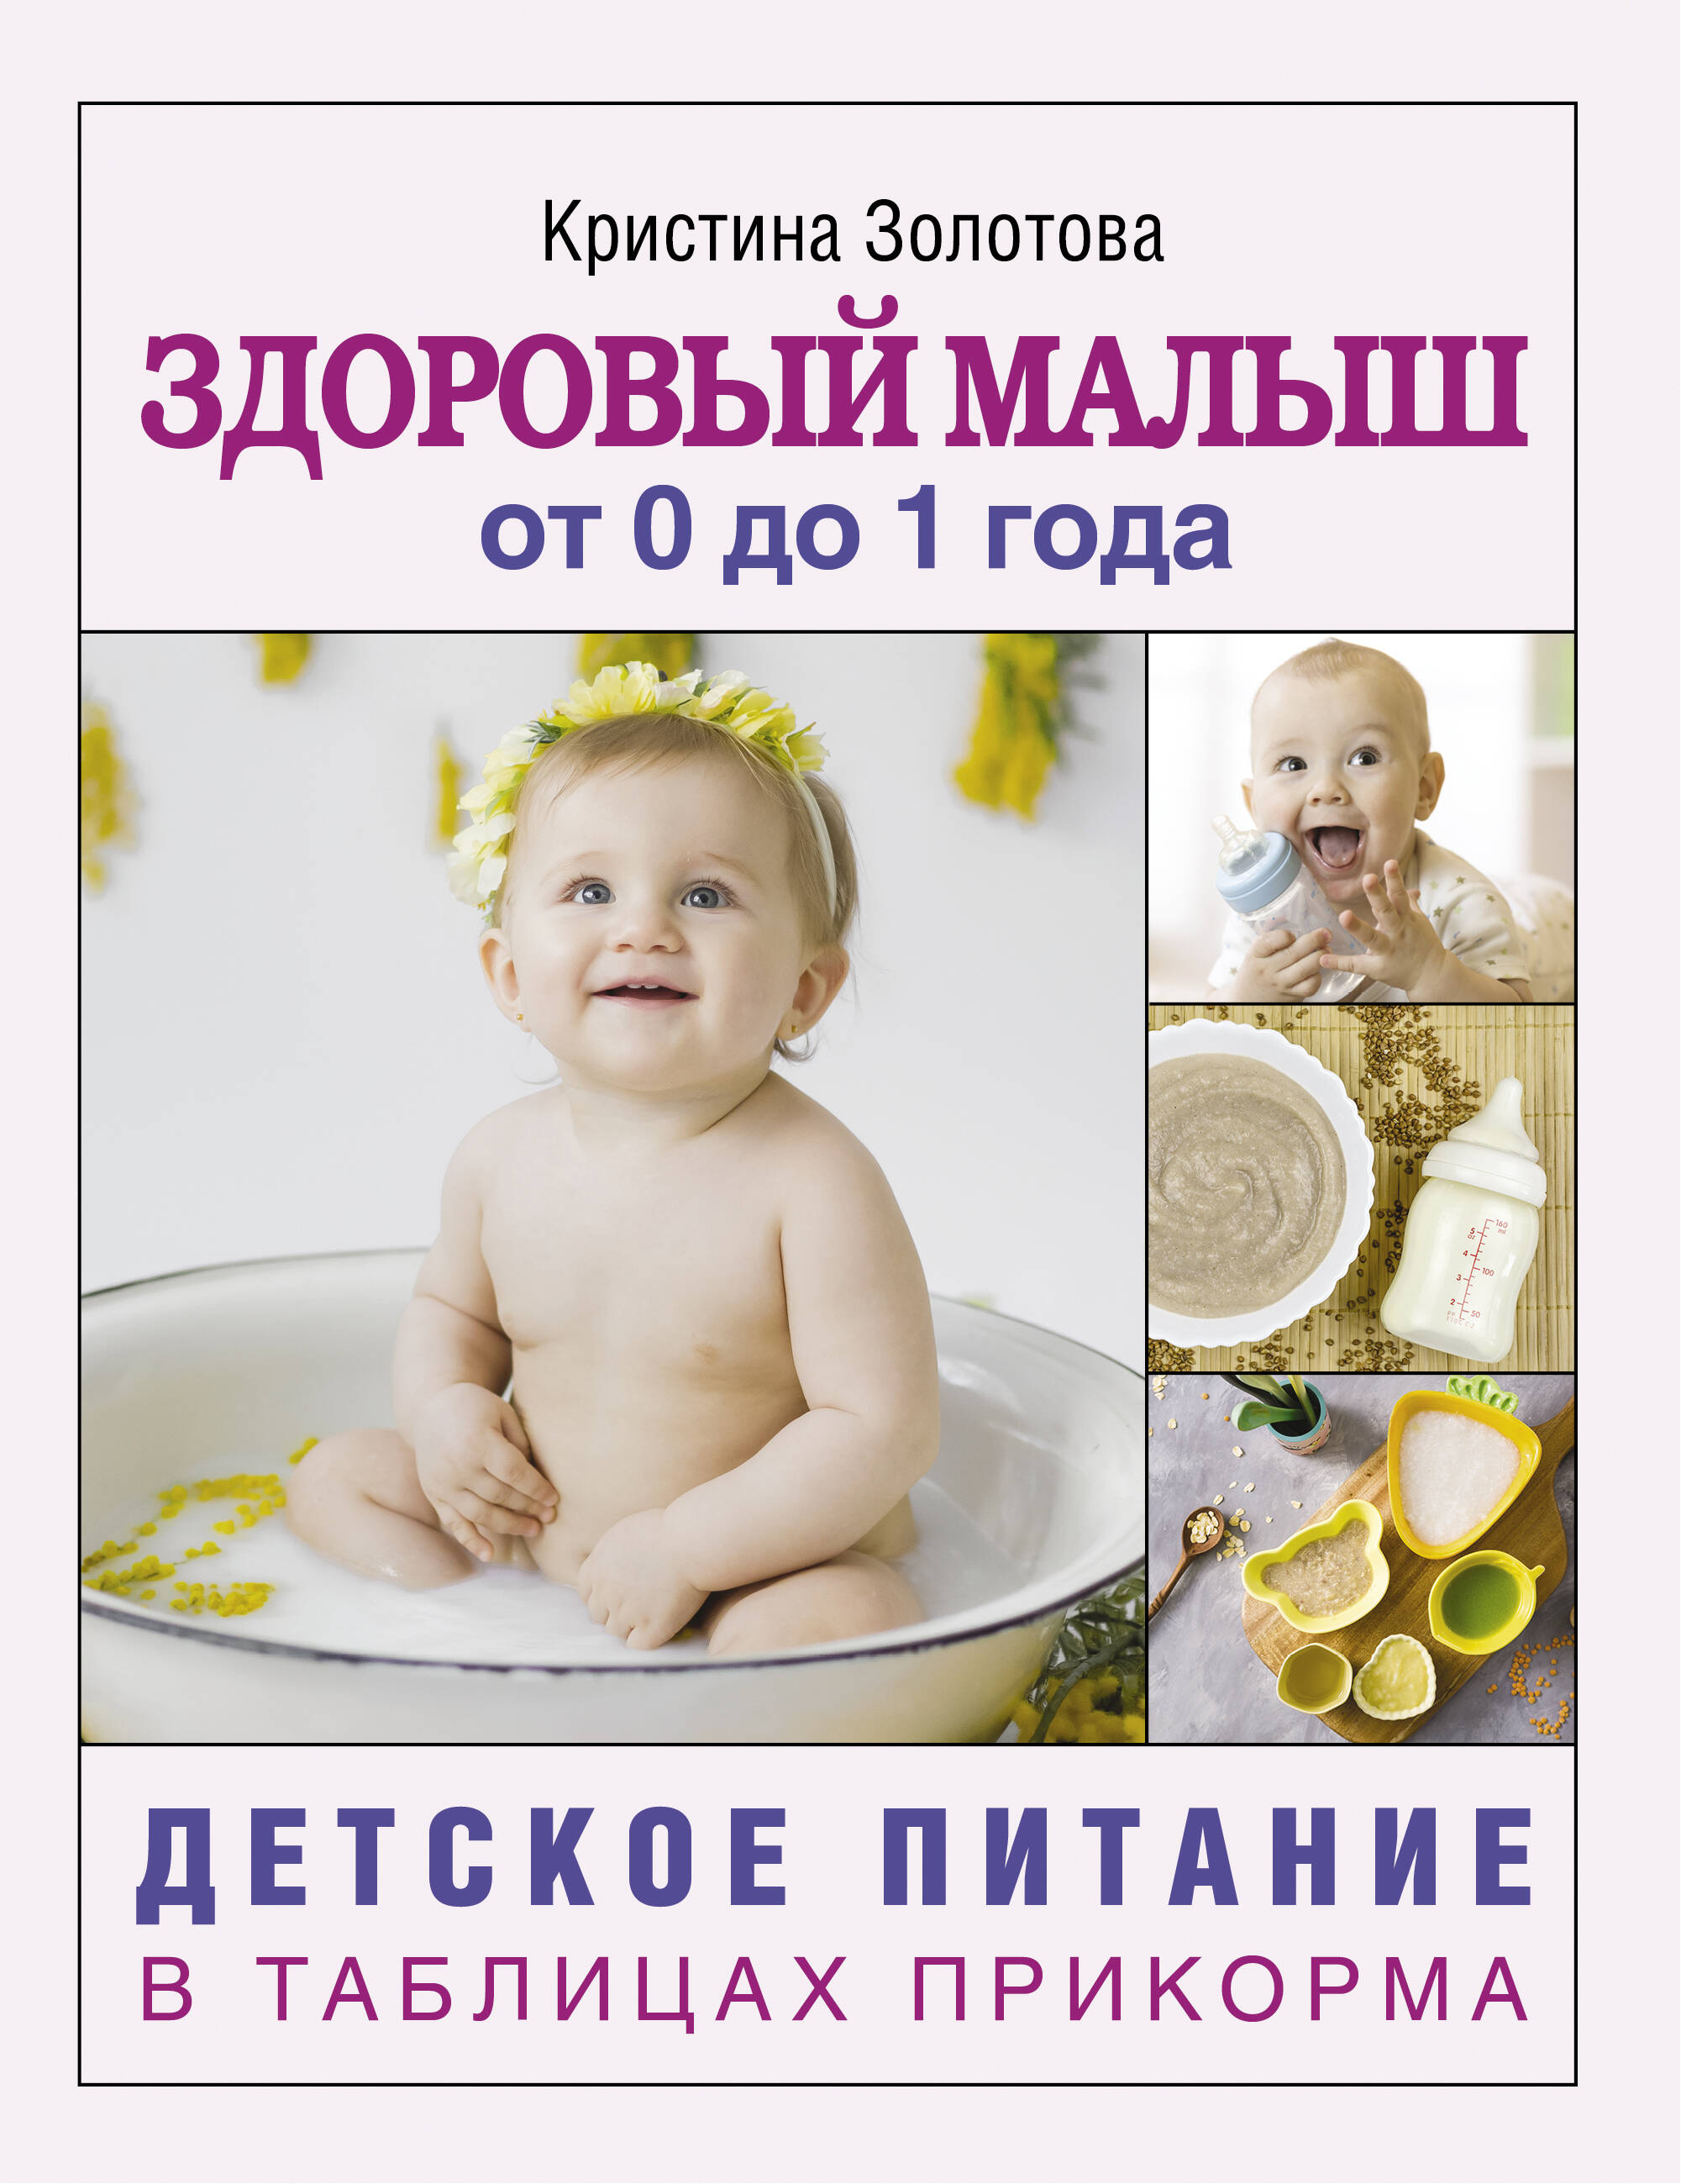 Золотова Кристина Игоревна - Здоровый малыш от 0 до 1 года. Детское питание в таблицах прикорма